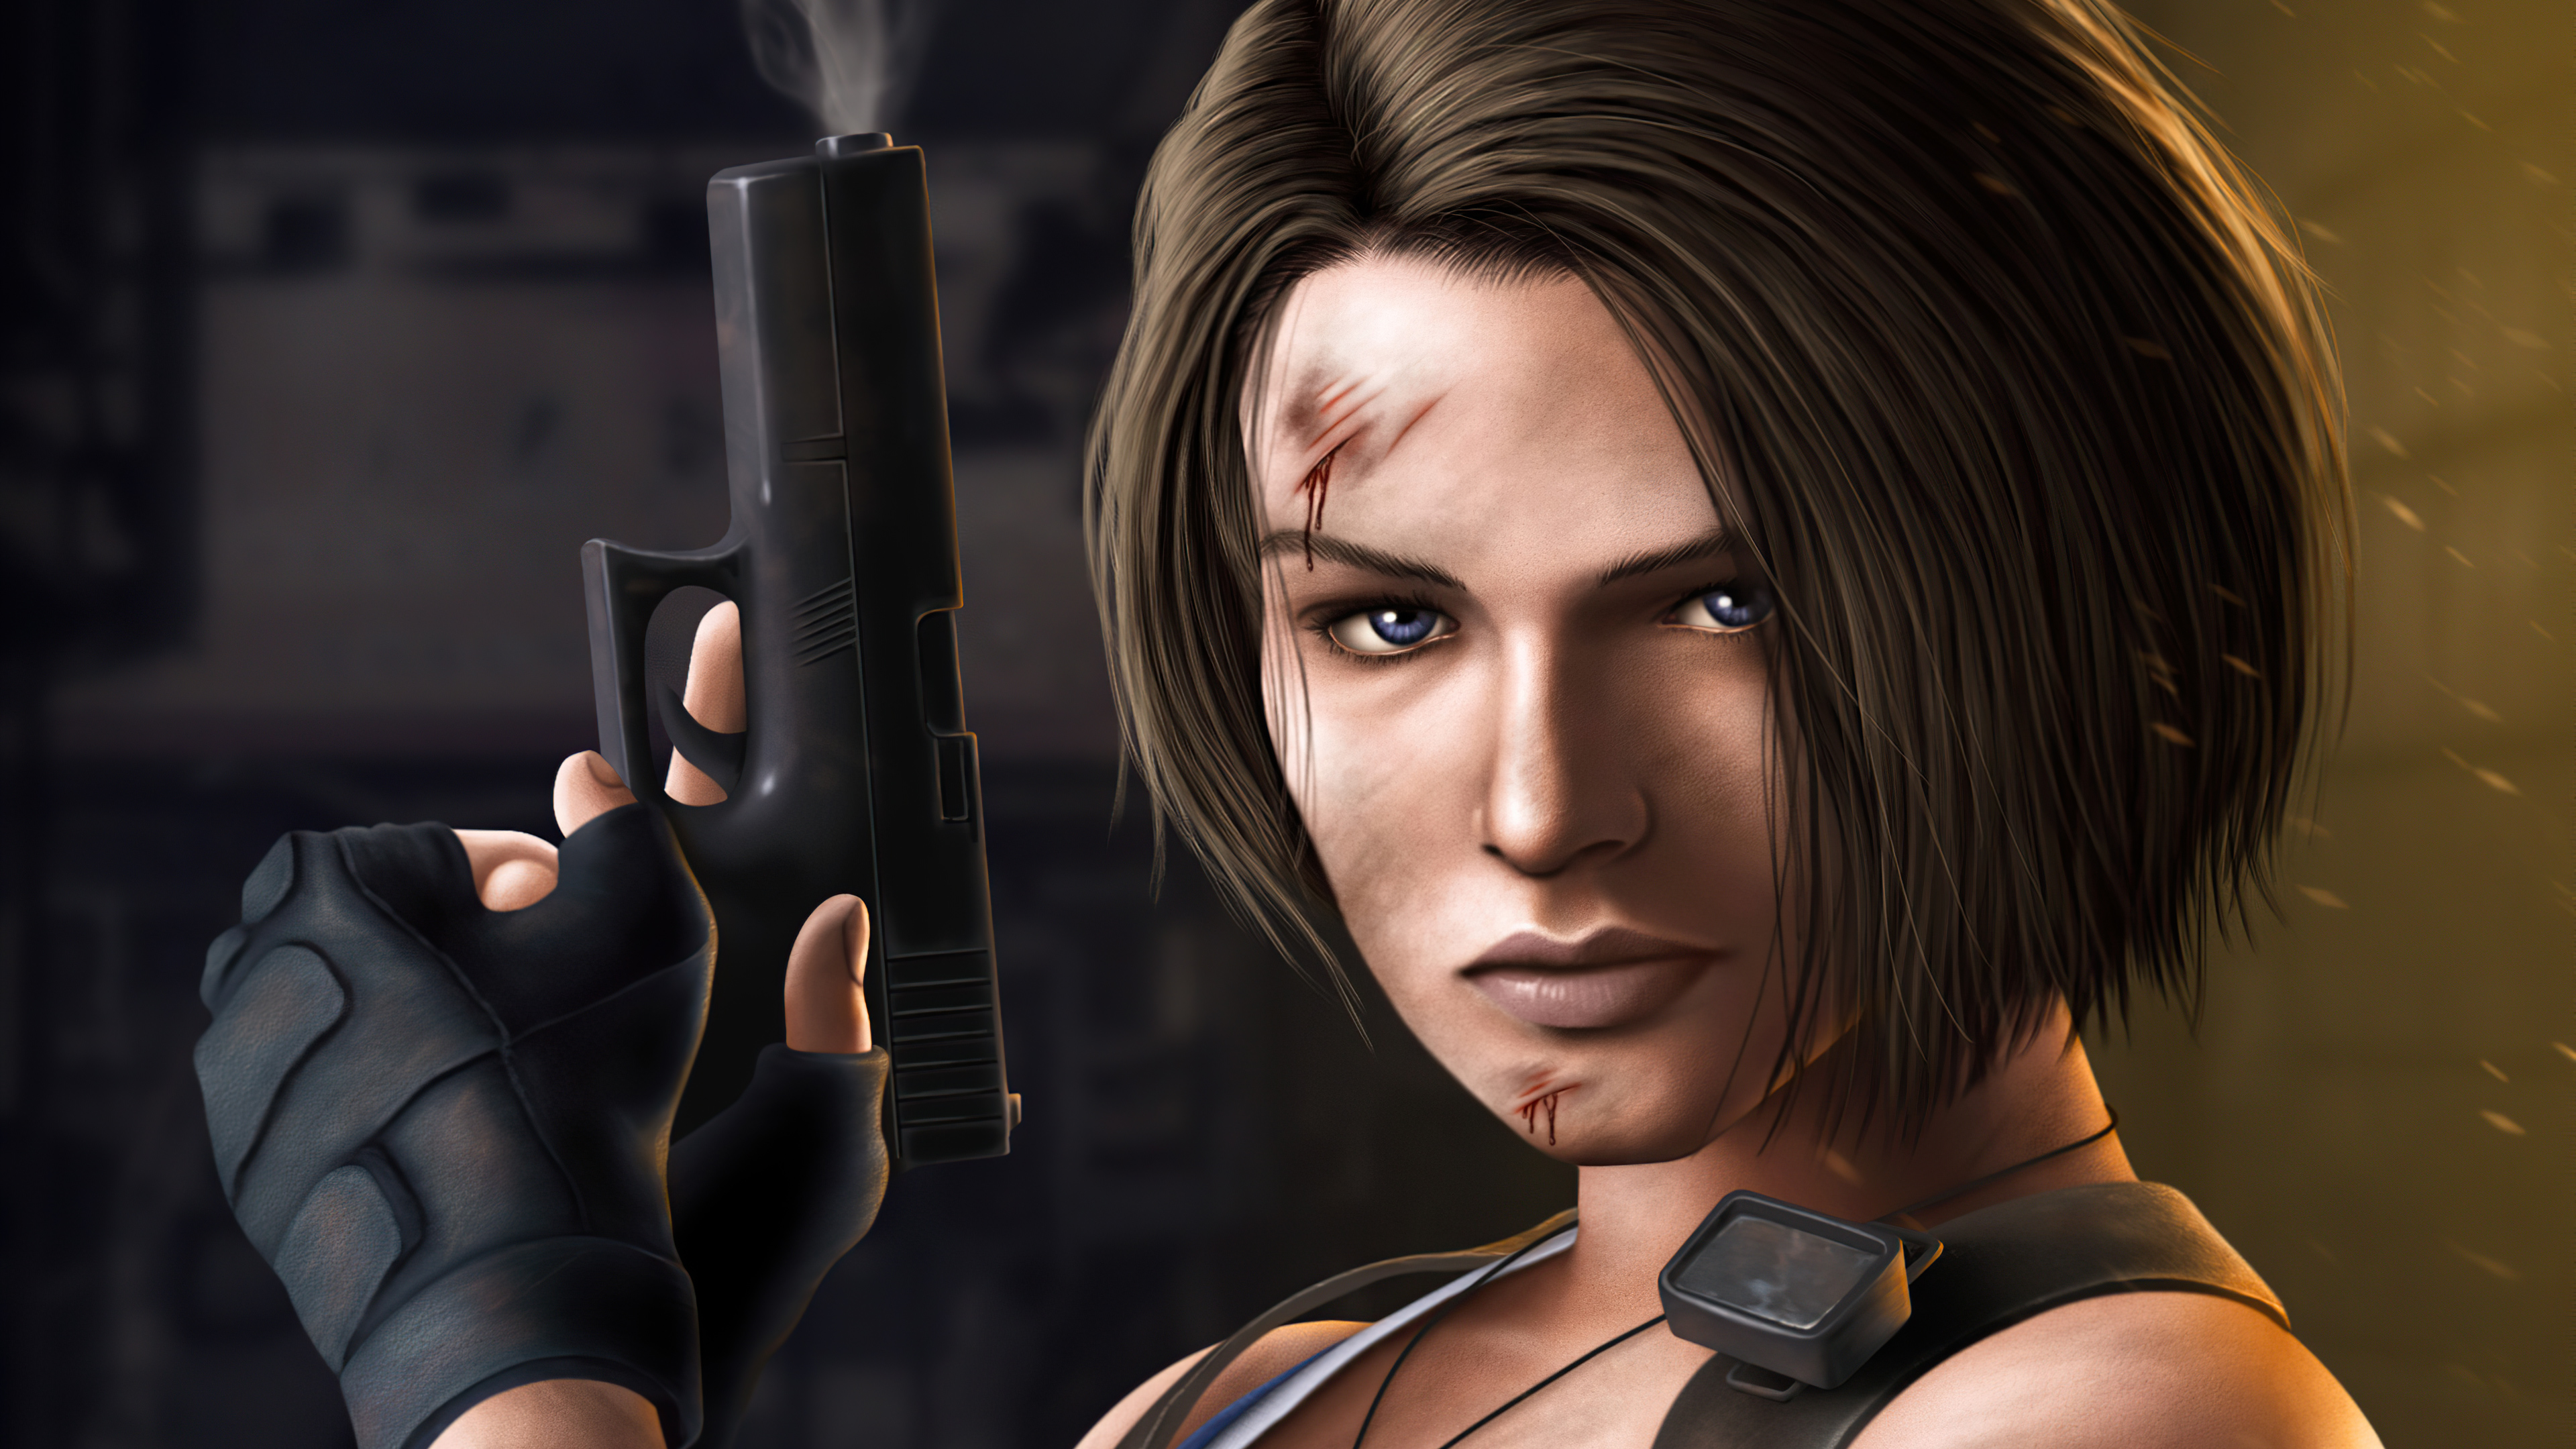 Jill Valentine Resident Evil 3 3840x2160